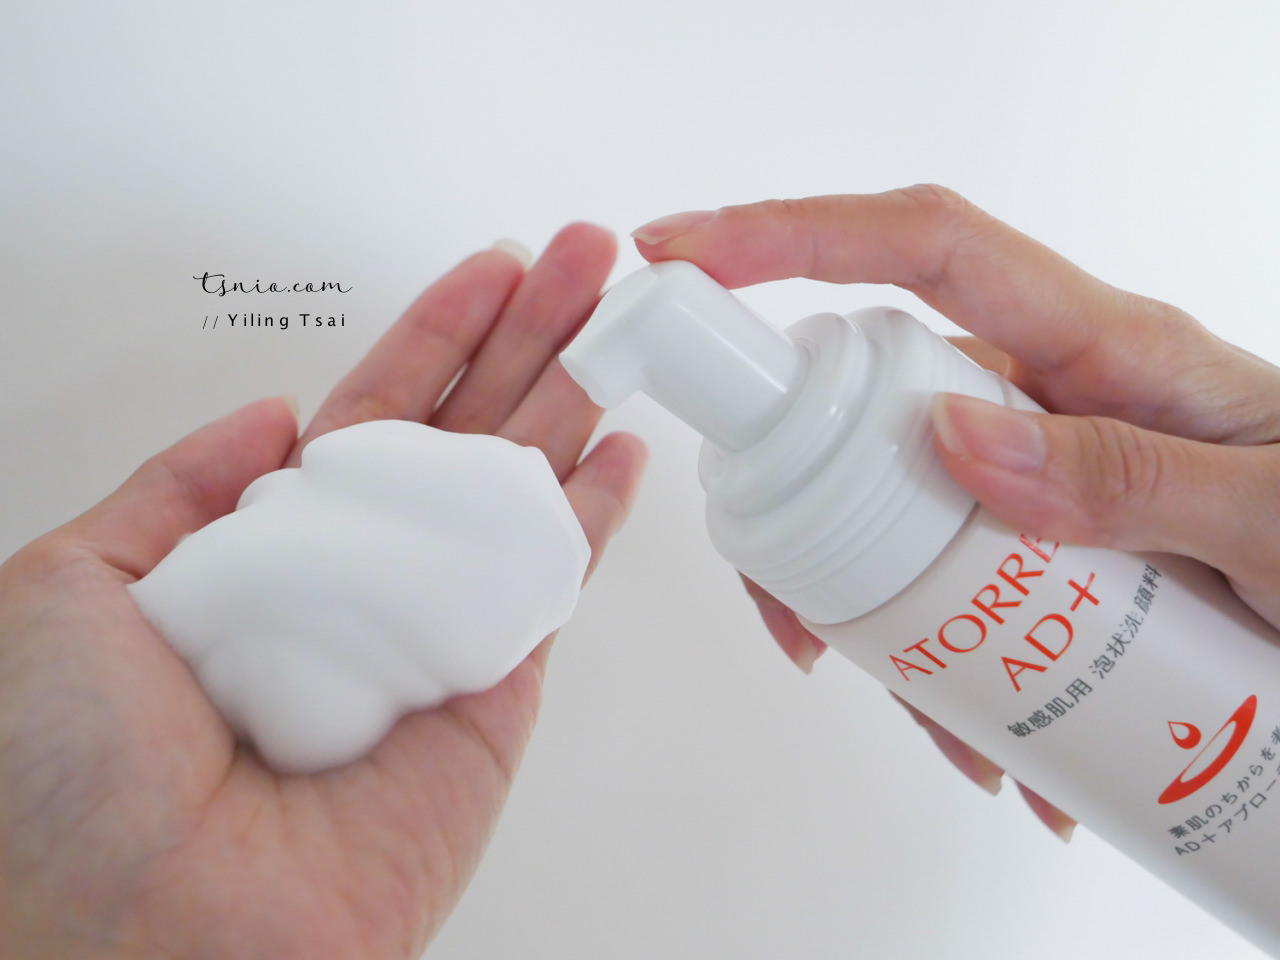 日本 ATORREGE AD+ 洗卸組 敏感問題肌適用溫和產品 25 週年印花樂聯名款